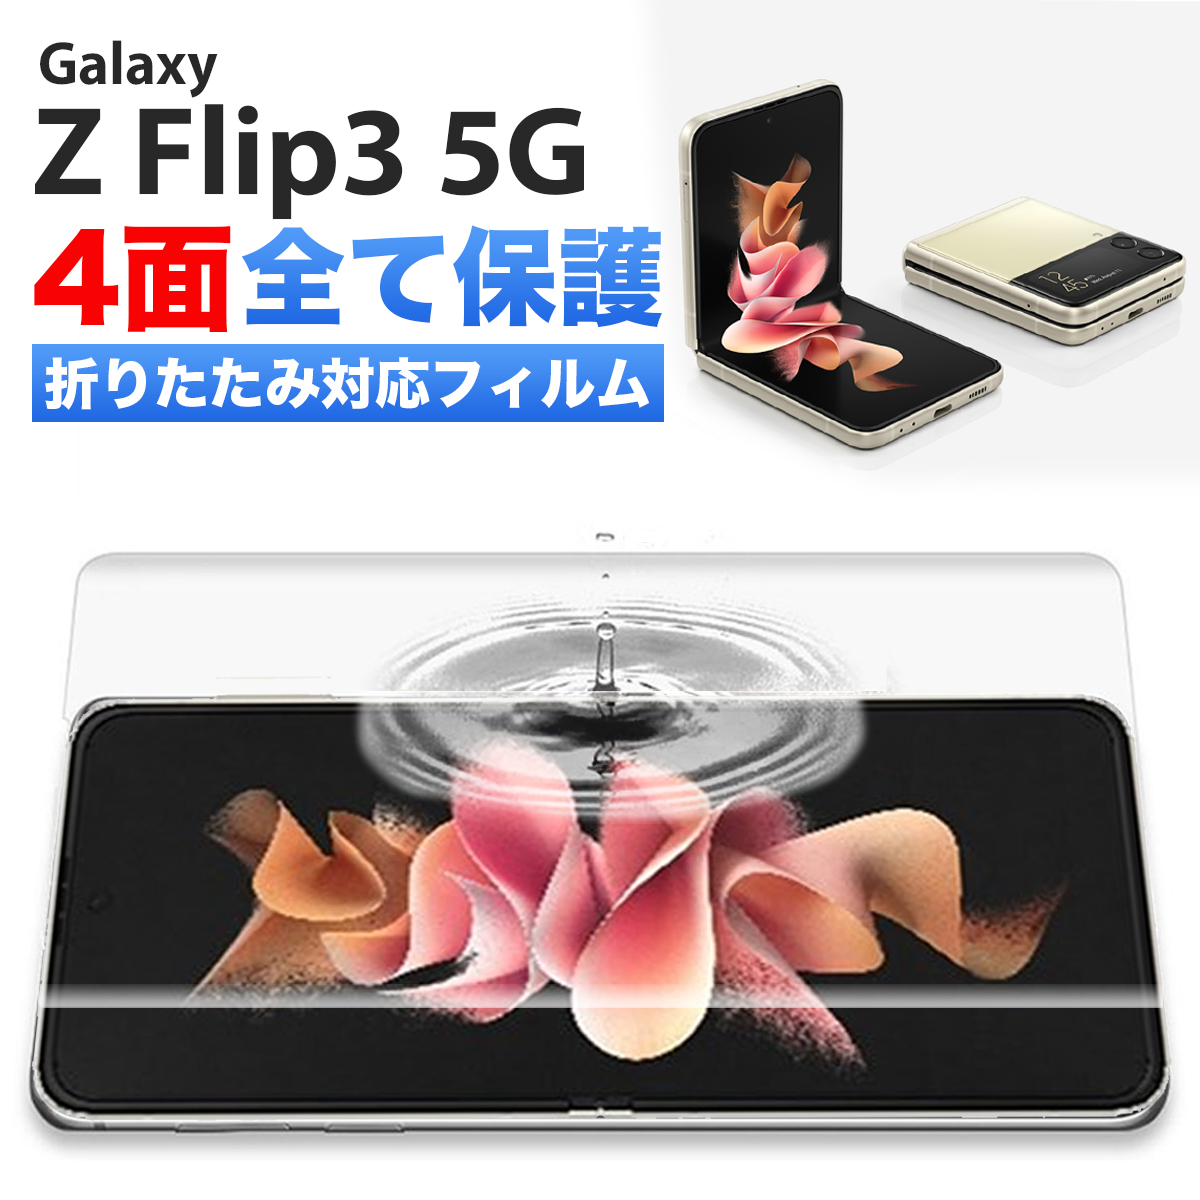 楽天市場 Galaxy Z Fold3 5g フィルム ケースに干渉しない Sc 55b Scg11 Sペン対応 ギャラクシー スマホ 全面 保護 指紋認証 対応 割れない Tpu ウレタンフィルム Flex 3d クリア 透明 Samsung Galaxy Fold フィルム オールインワン 背面 前面 サイド 4面セット ポイント